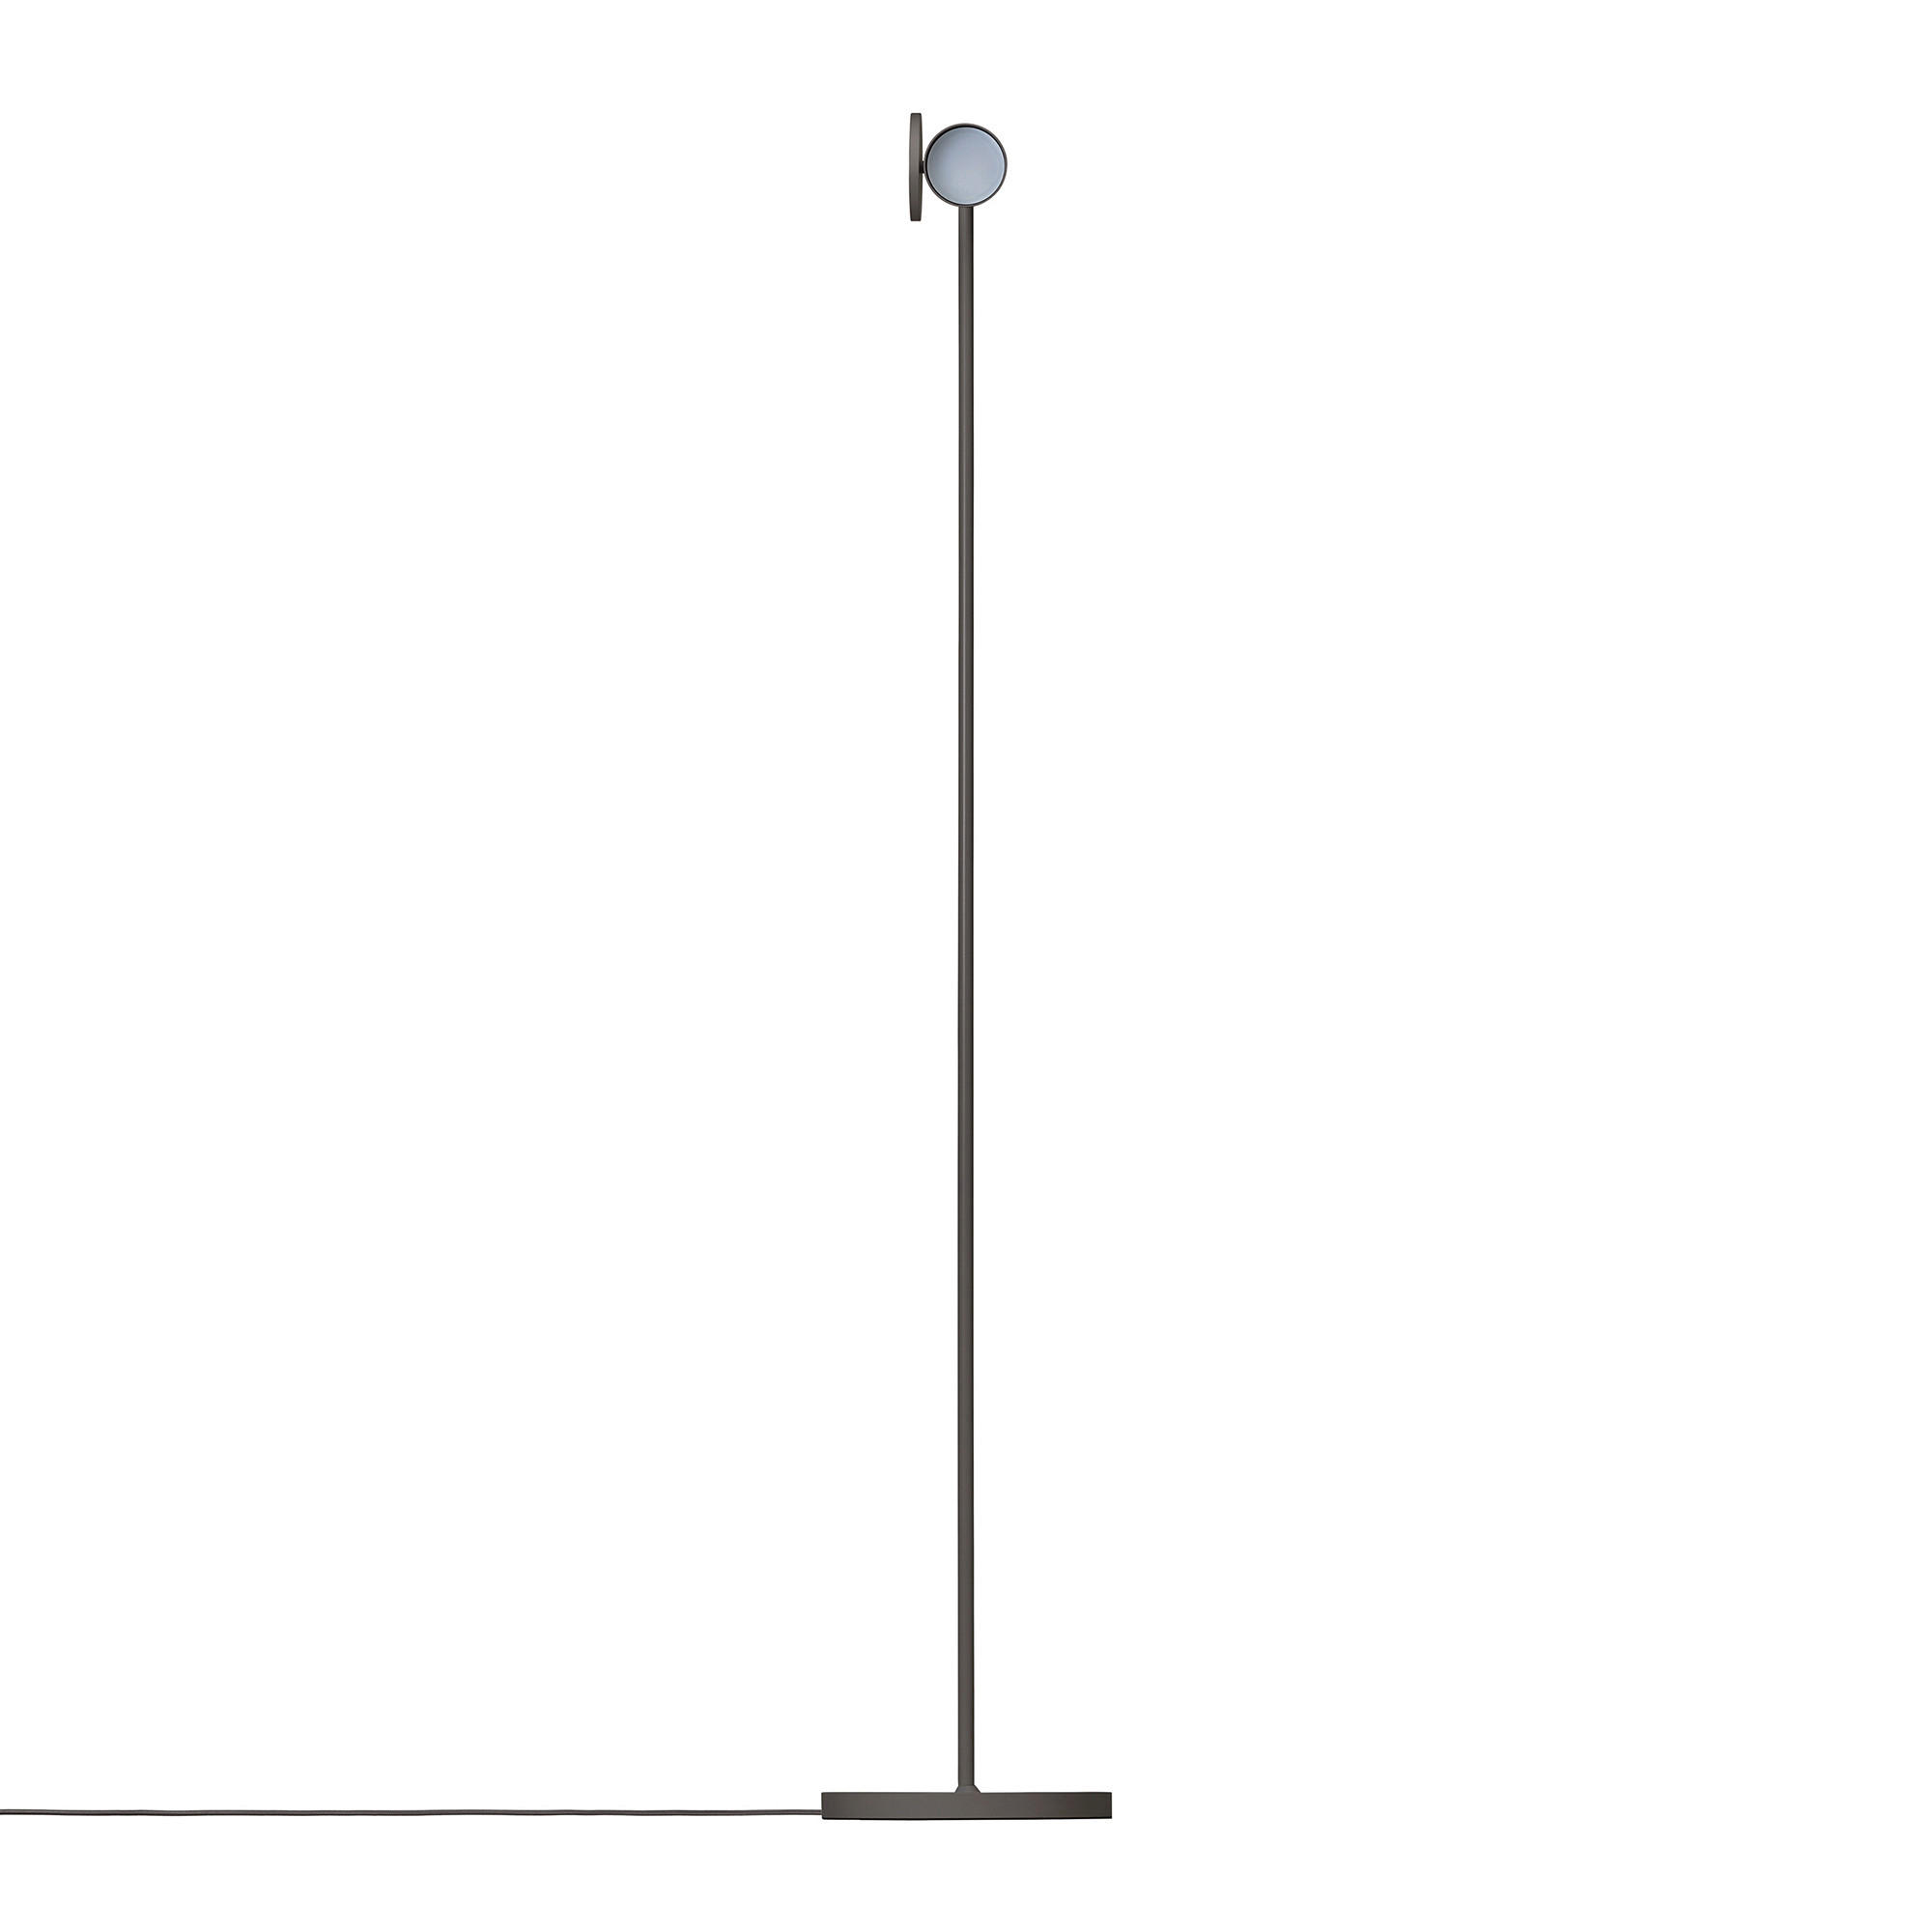 STEHLEUCHTE 22/130 cm    - Anthrazit, Design, Metall (22/130cm) - Blomus